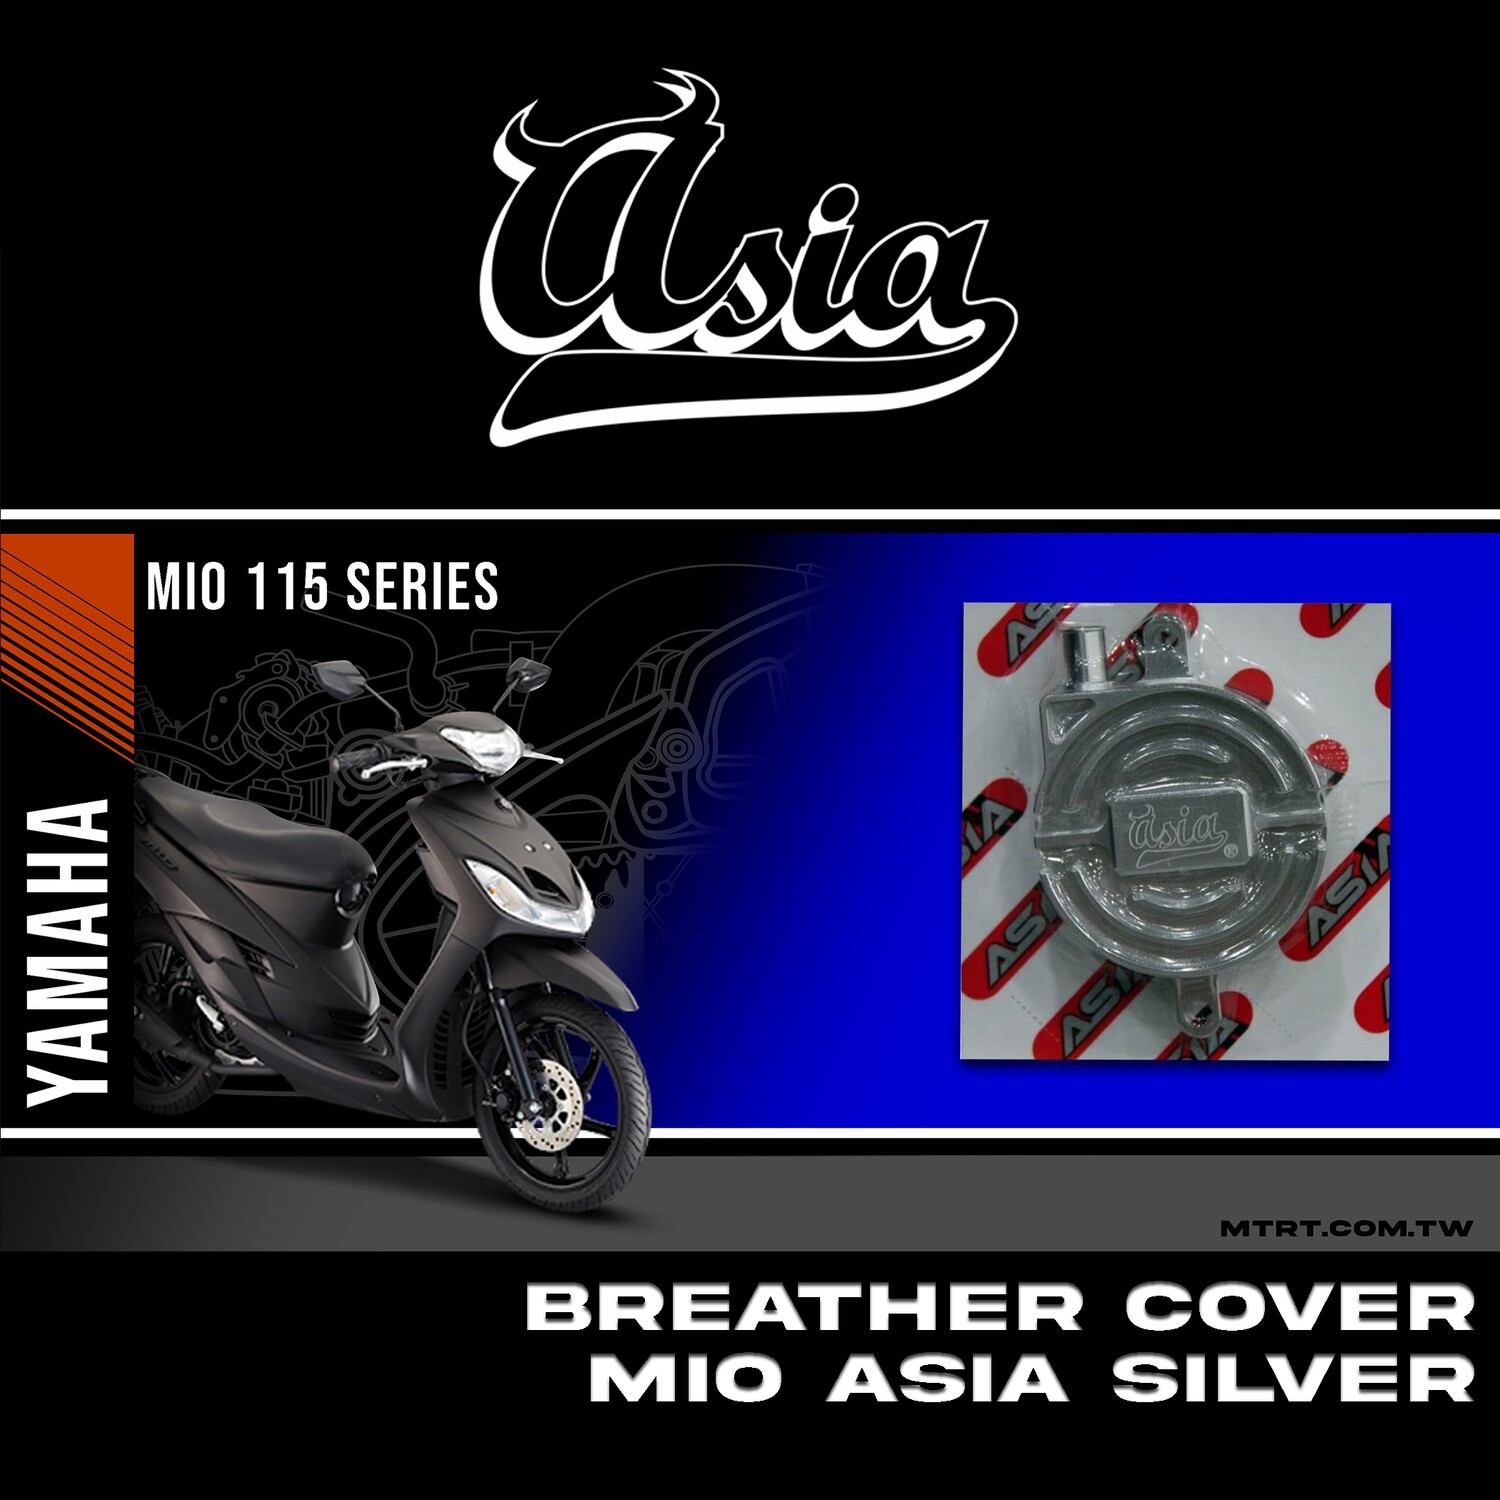 BREATHER COVER SILVER MIO ASIA